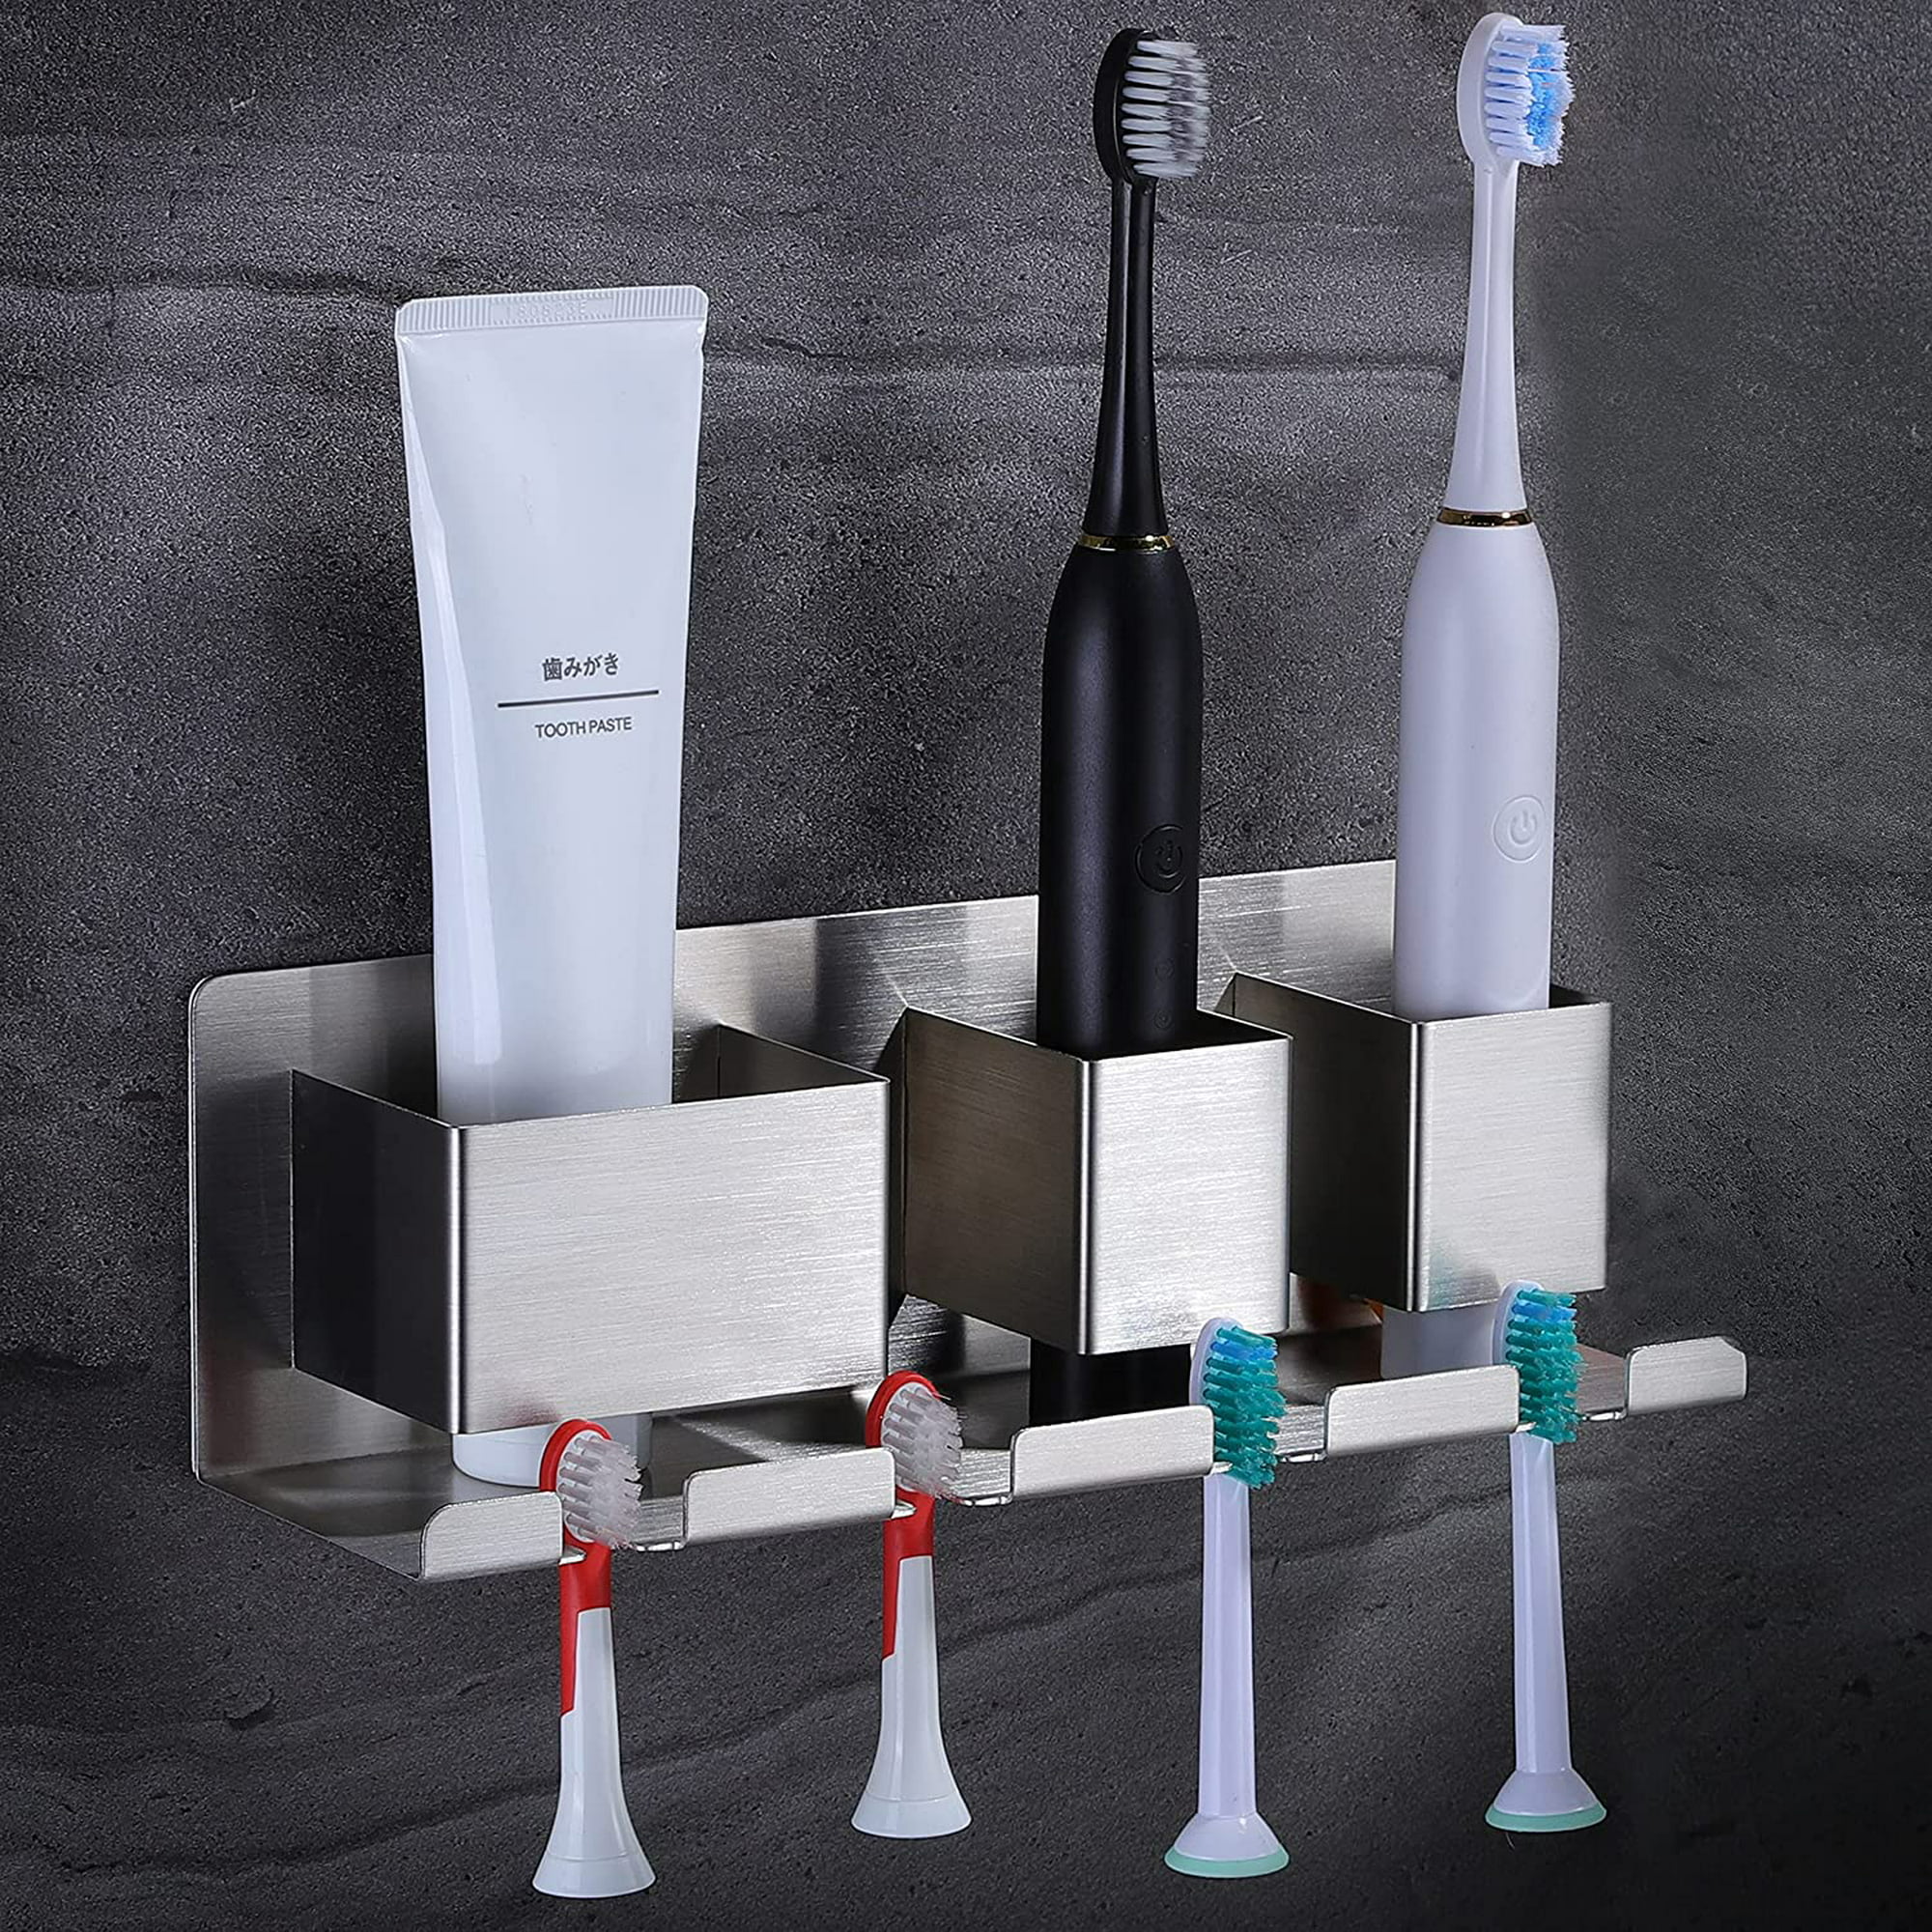 Soportes autoadhesivos para cepillos de dientes montados en la pared,  organizador de cepillos de dientes eléctrico con 3 ranuras para ducha,  colgador